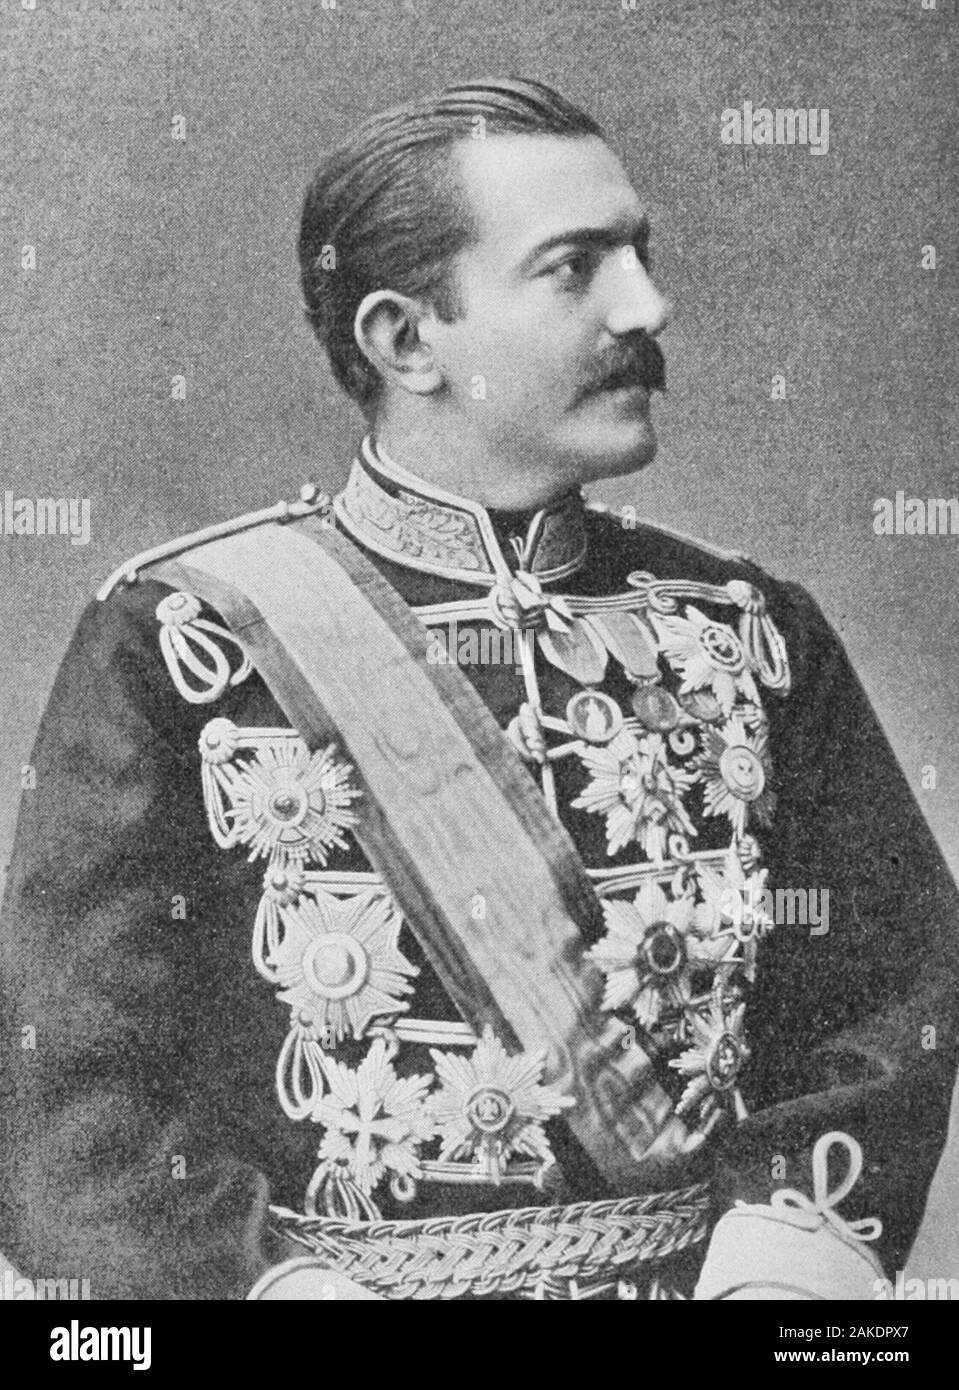 König Milan ich von Serbien, ca. 1900 Stockfoto